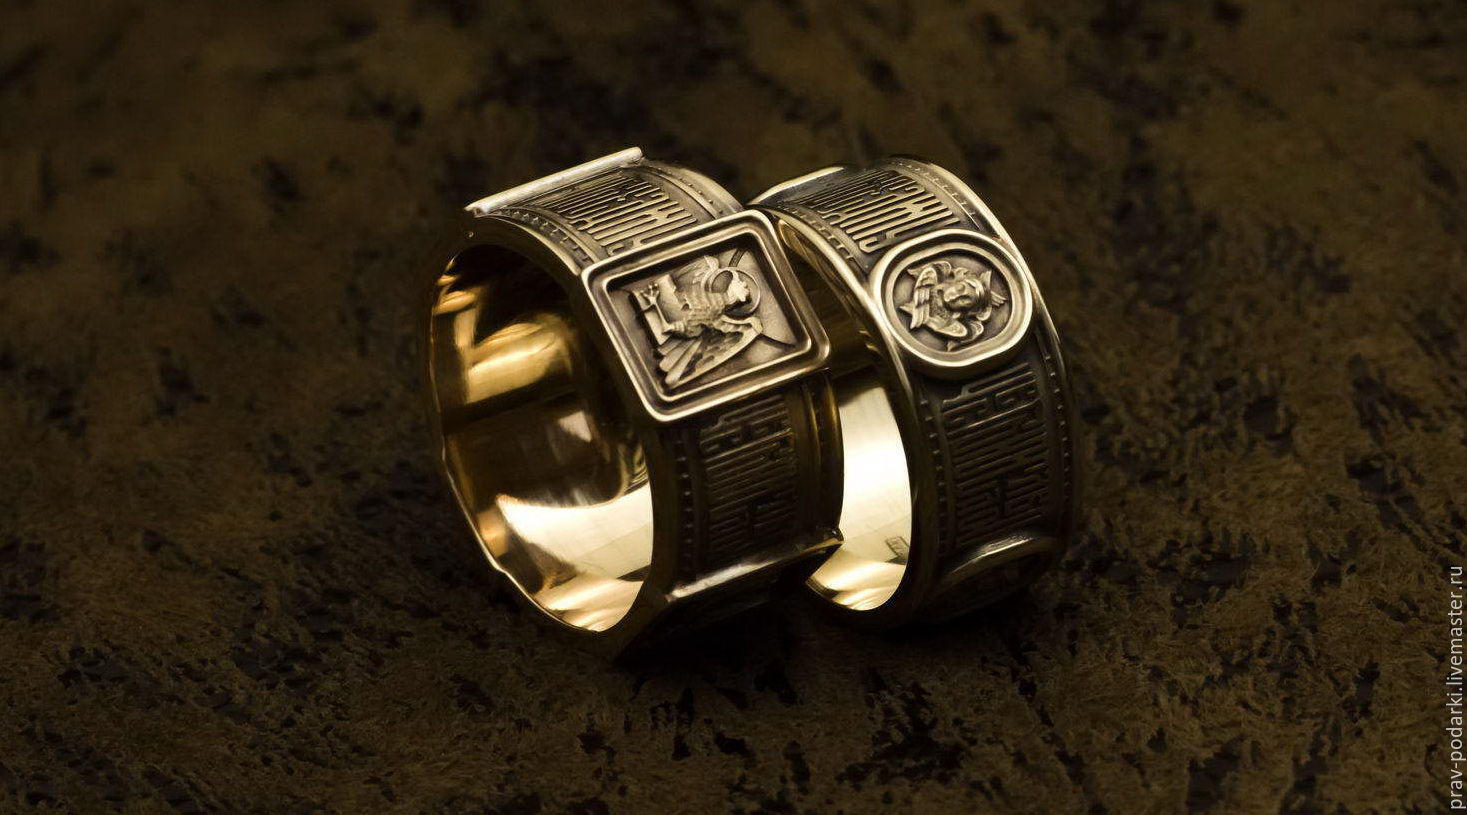 Какие значения в себе несет кольцо на указательном пальце мужчины Какие значения имеют определенные виды колец Откуда в истории появилось кольцо у мужчин Что означает черное кольцо на пальце